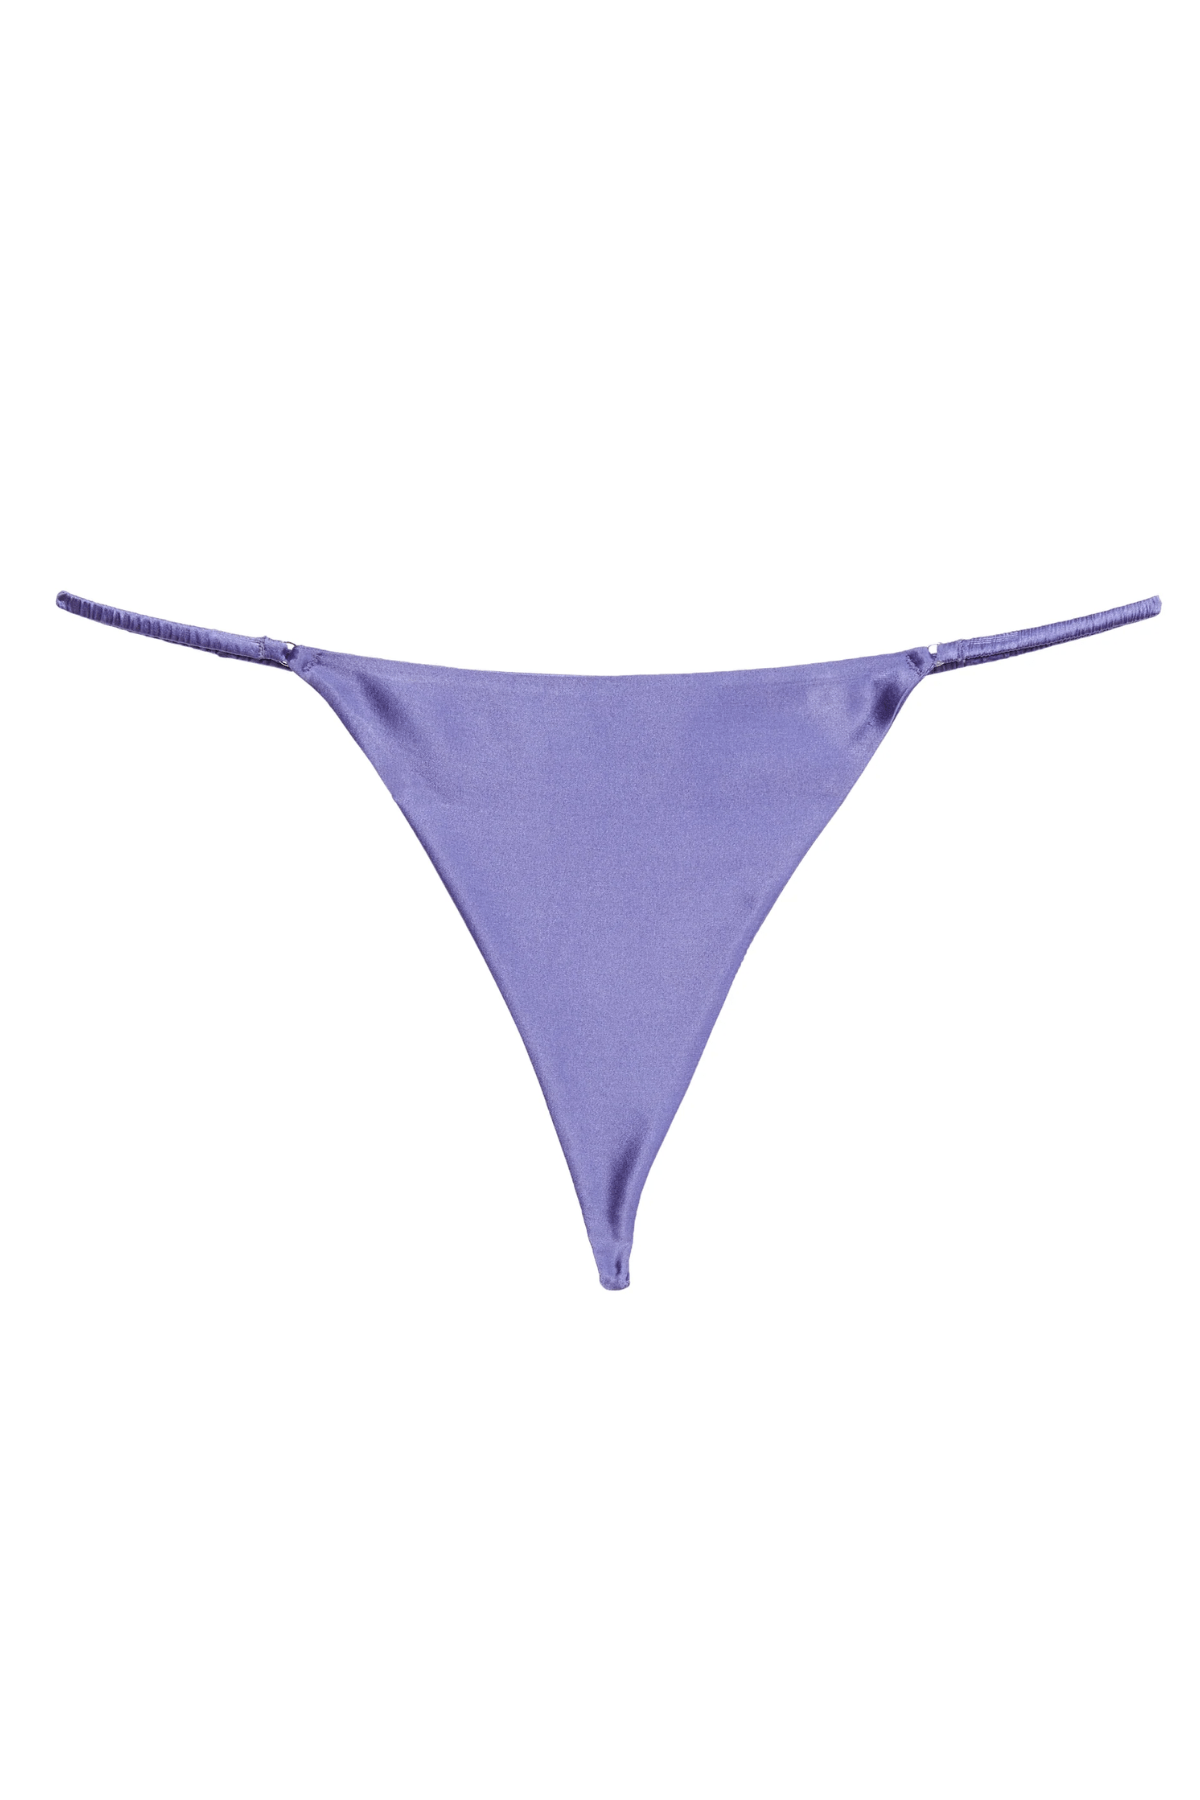 Fleur du Mal Thong Luxe V String- Purple